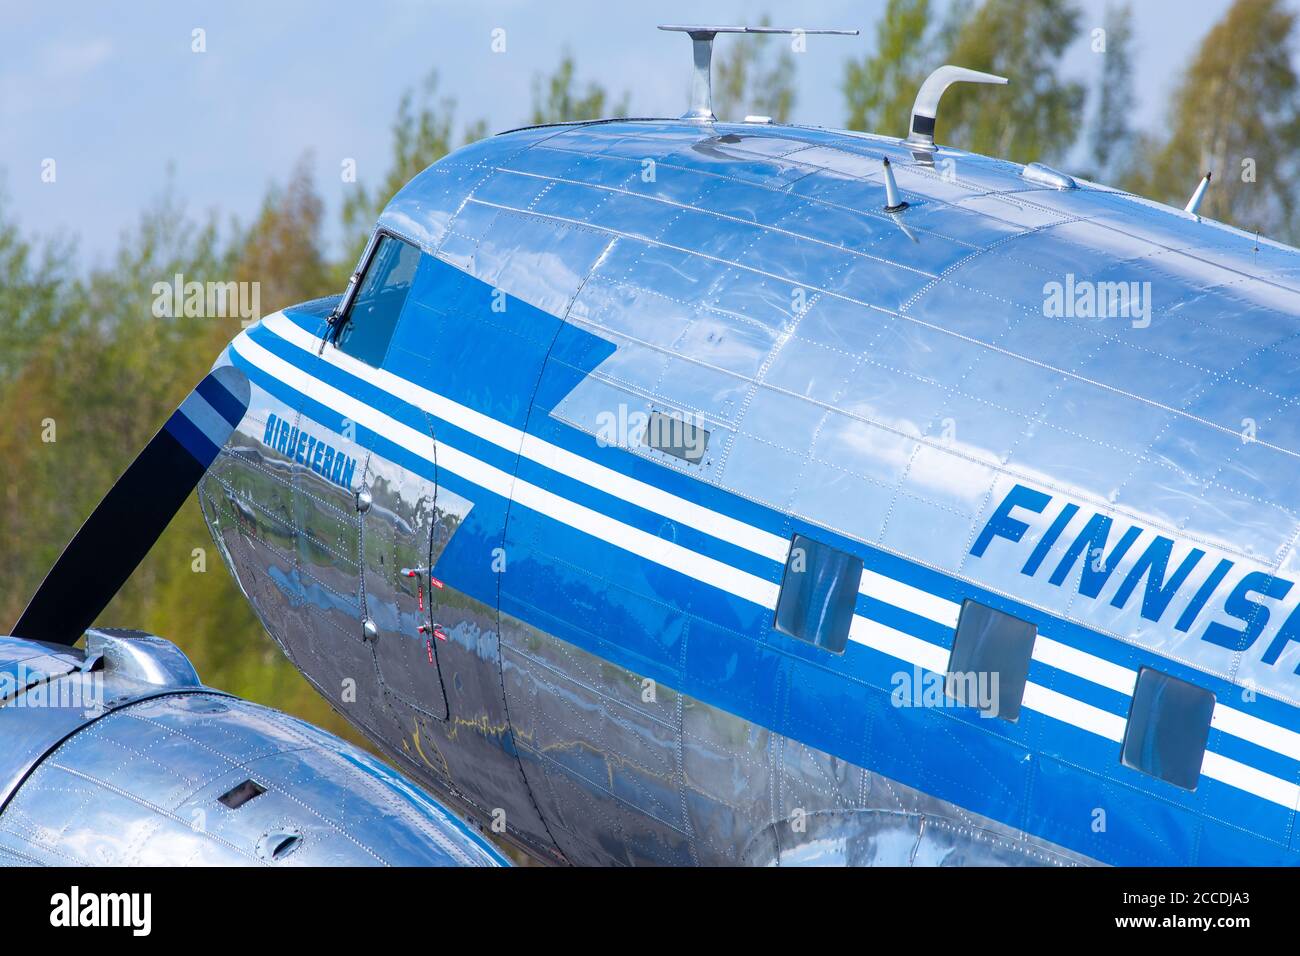 Helsinki / Finlande - 12 mai 2019 : OH-LCH, Aero Oy Douglas DC-3 avion de musée exploité par DC Association Finlande garée à l'aéroport Helsinki-Malmi. Banque D'Images